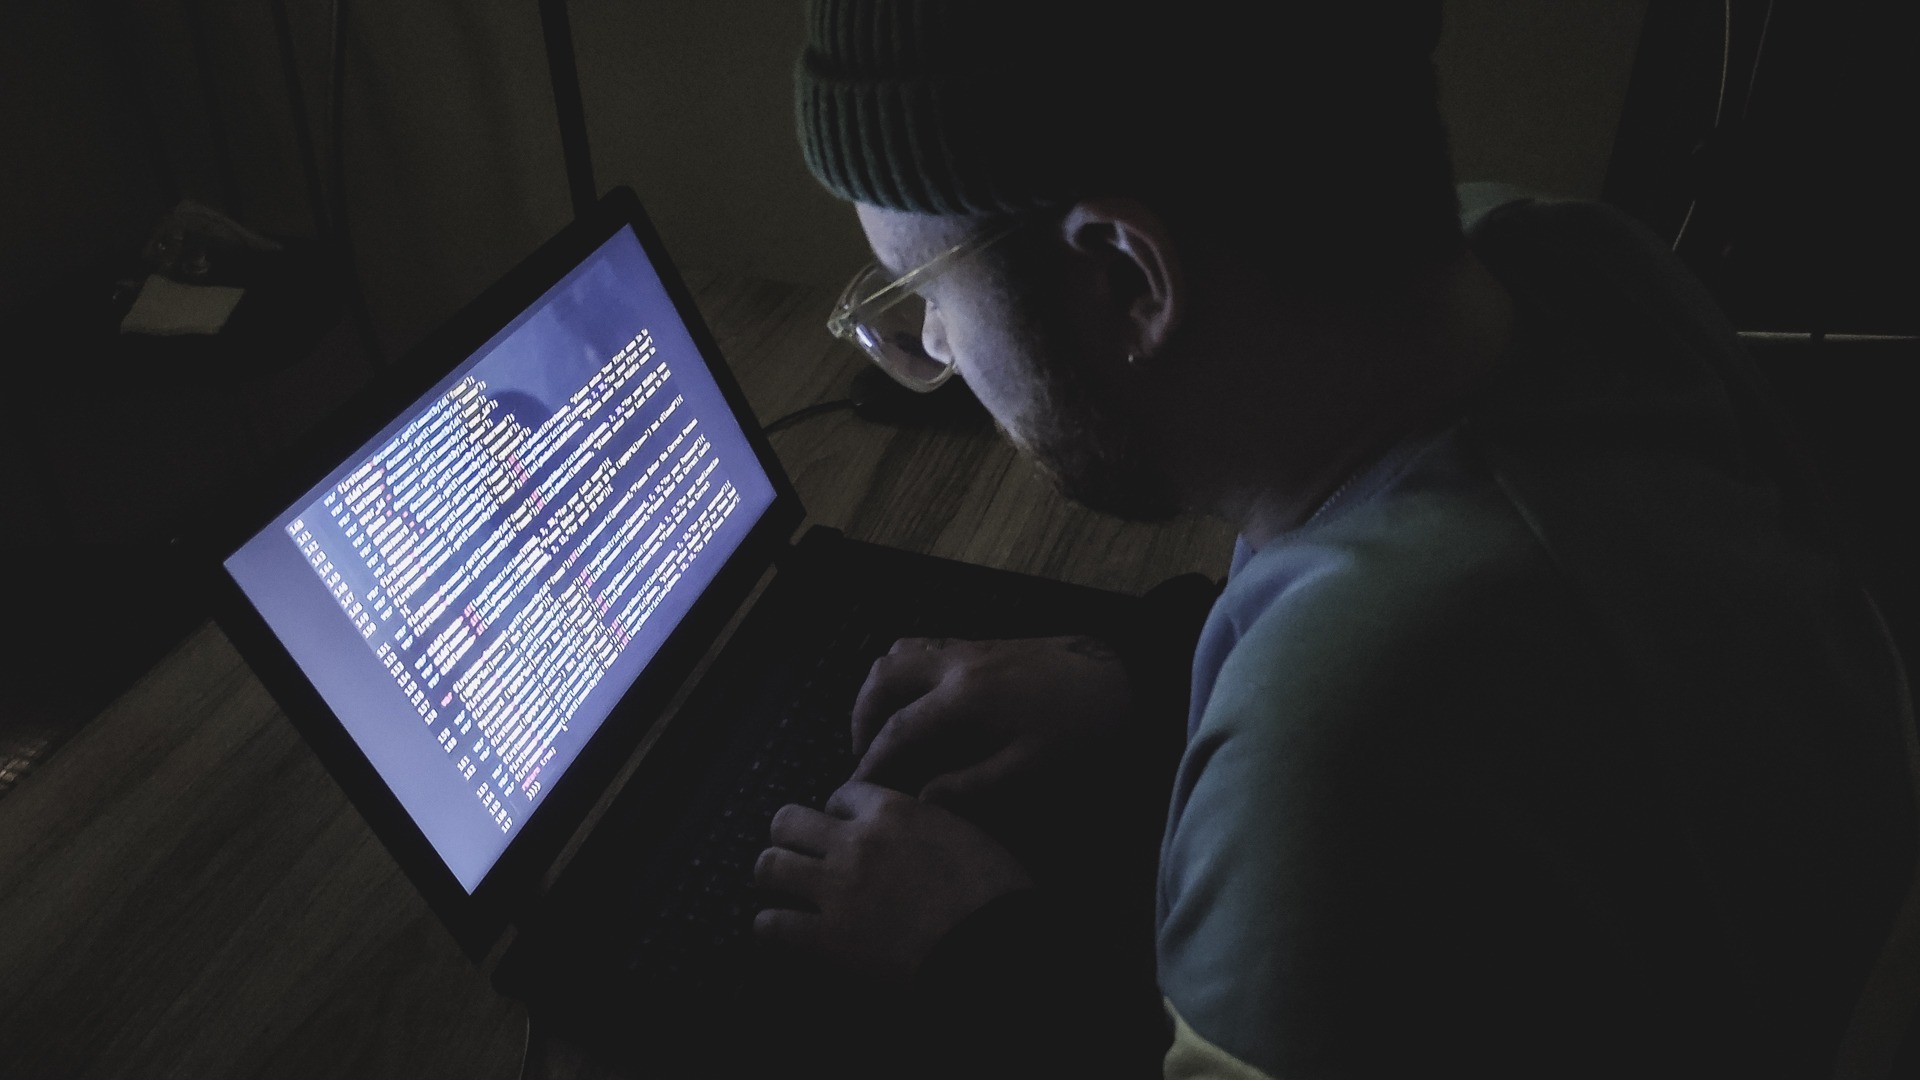 СМИ: российские хакеры взломали базу данных системы здравоохранения Британии